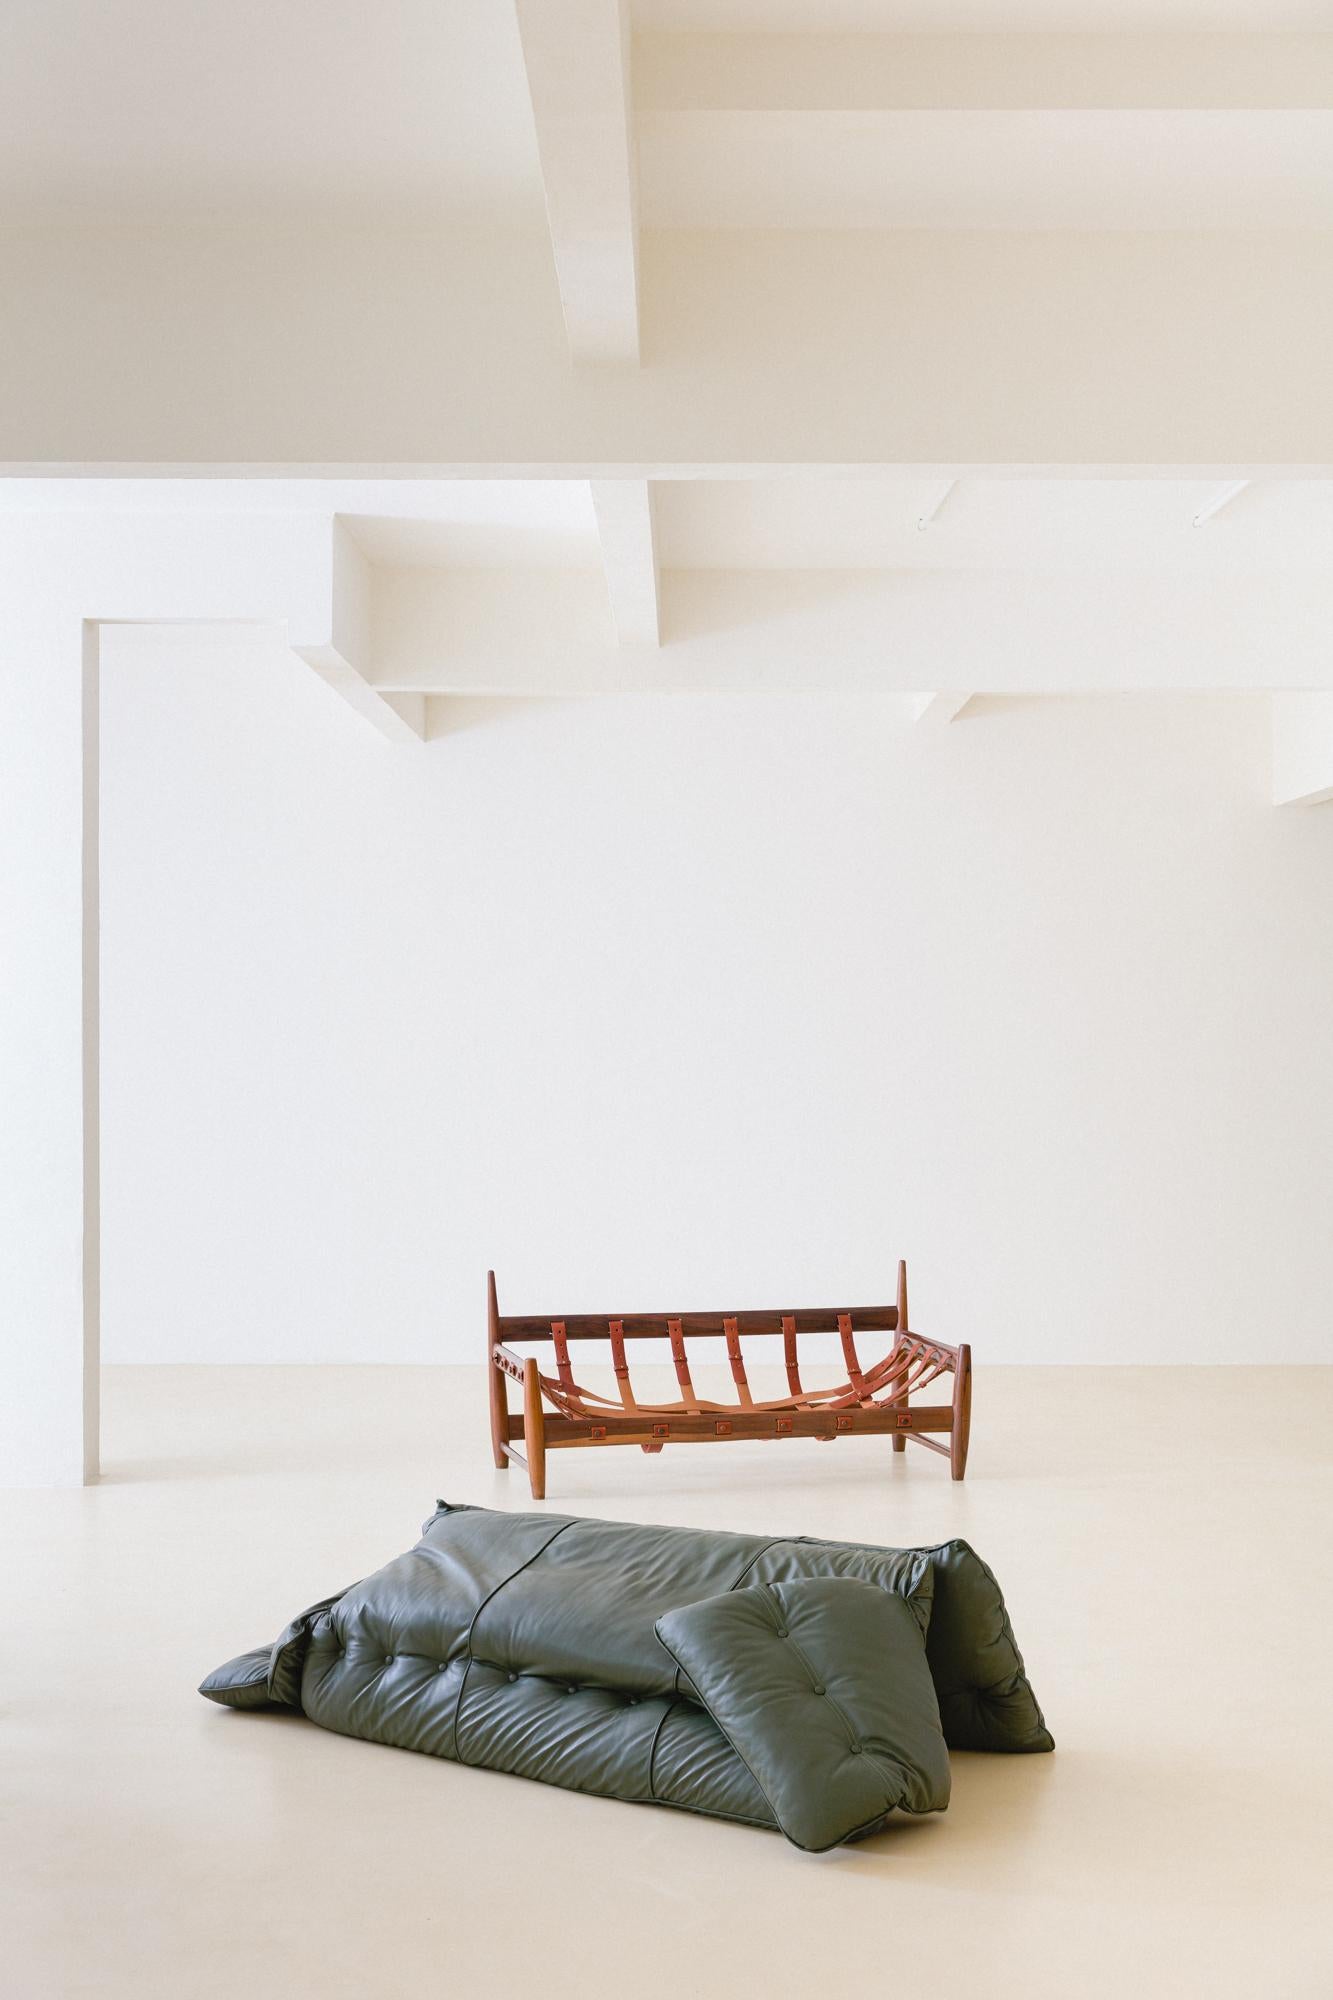 L'emblématique canapé Mole est la pièce maîtresse de Sergio Rodrigues, conçue entre 1956 et 1957, qui a donné naissance au célèbre fauteuil Mole, maintes fois primé. En portugais, 